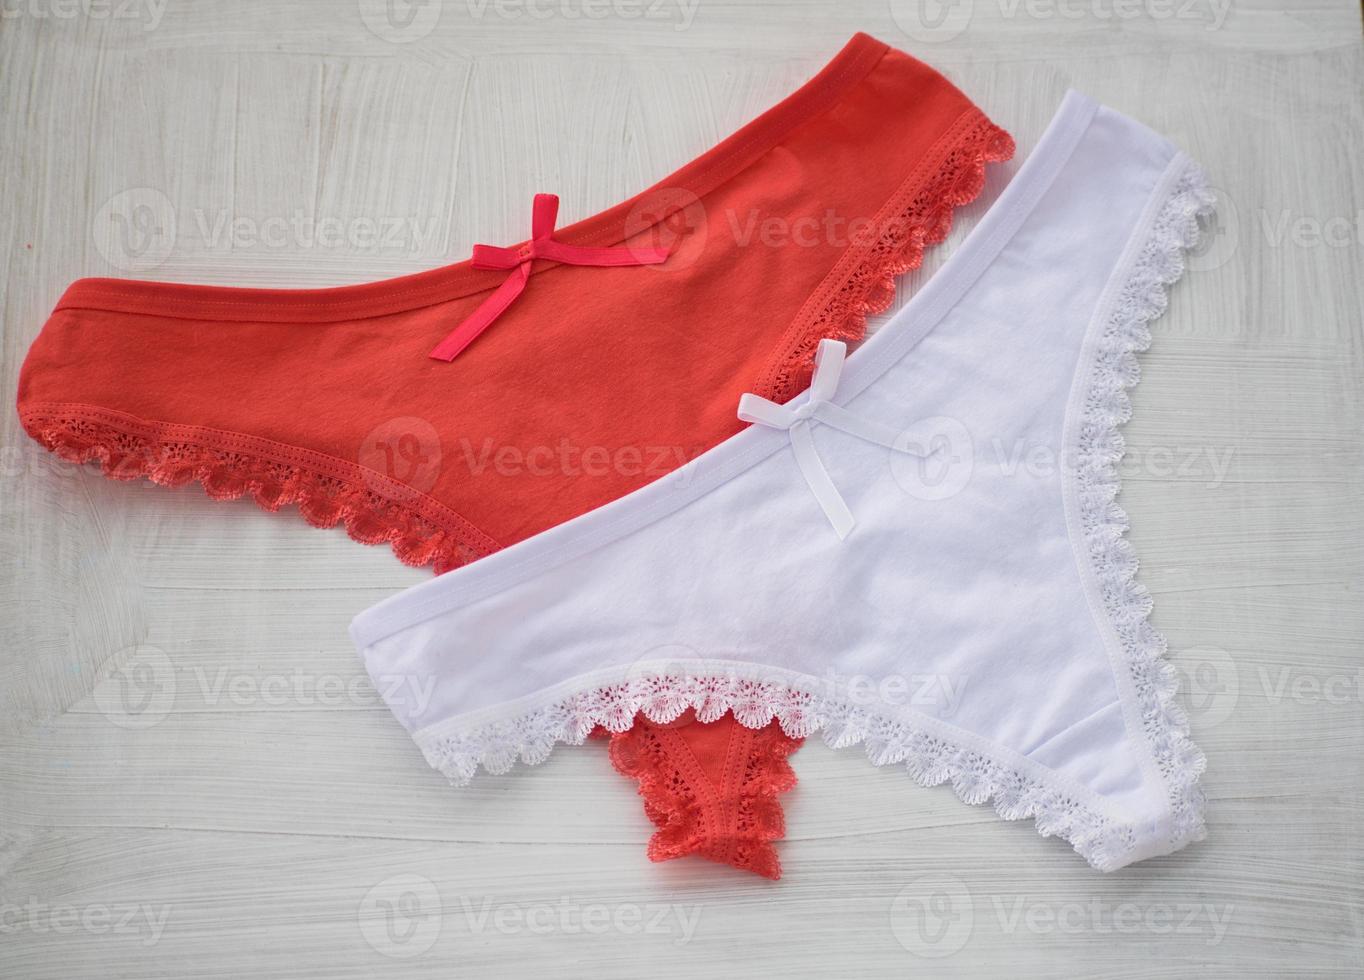 lingerie vermelha e branca. fio dental de renda vermelha e branca sobre fundo branco. foto